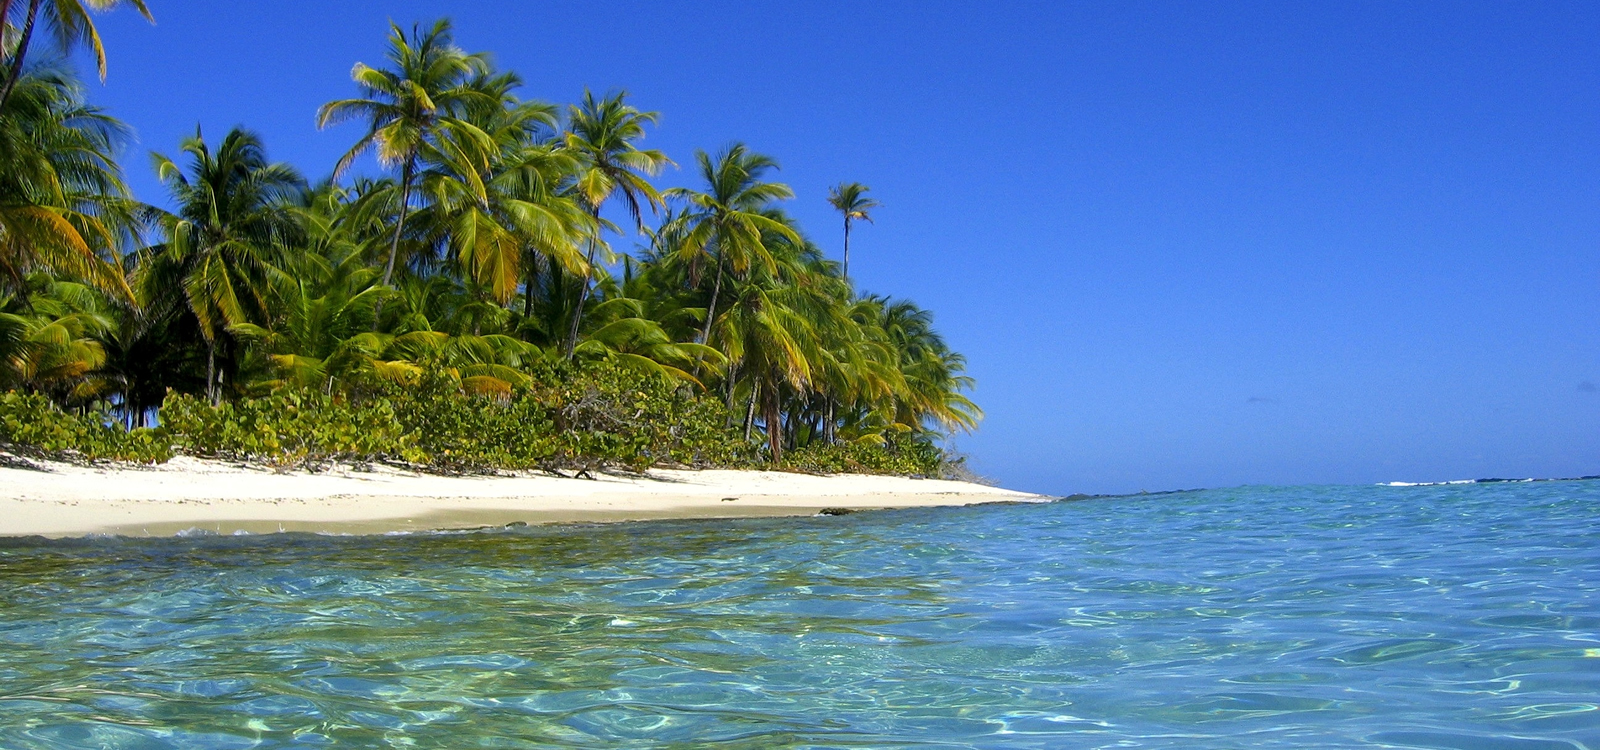 Private Island For Sale Grenada 3 